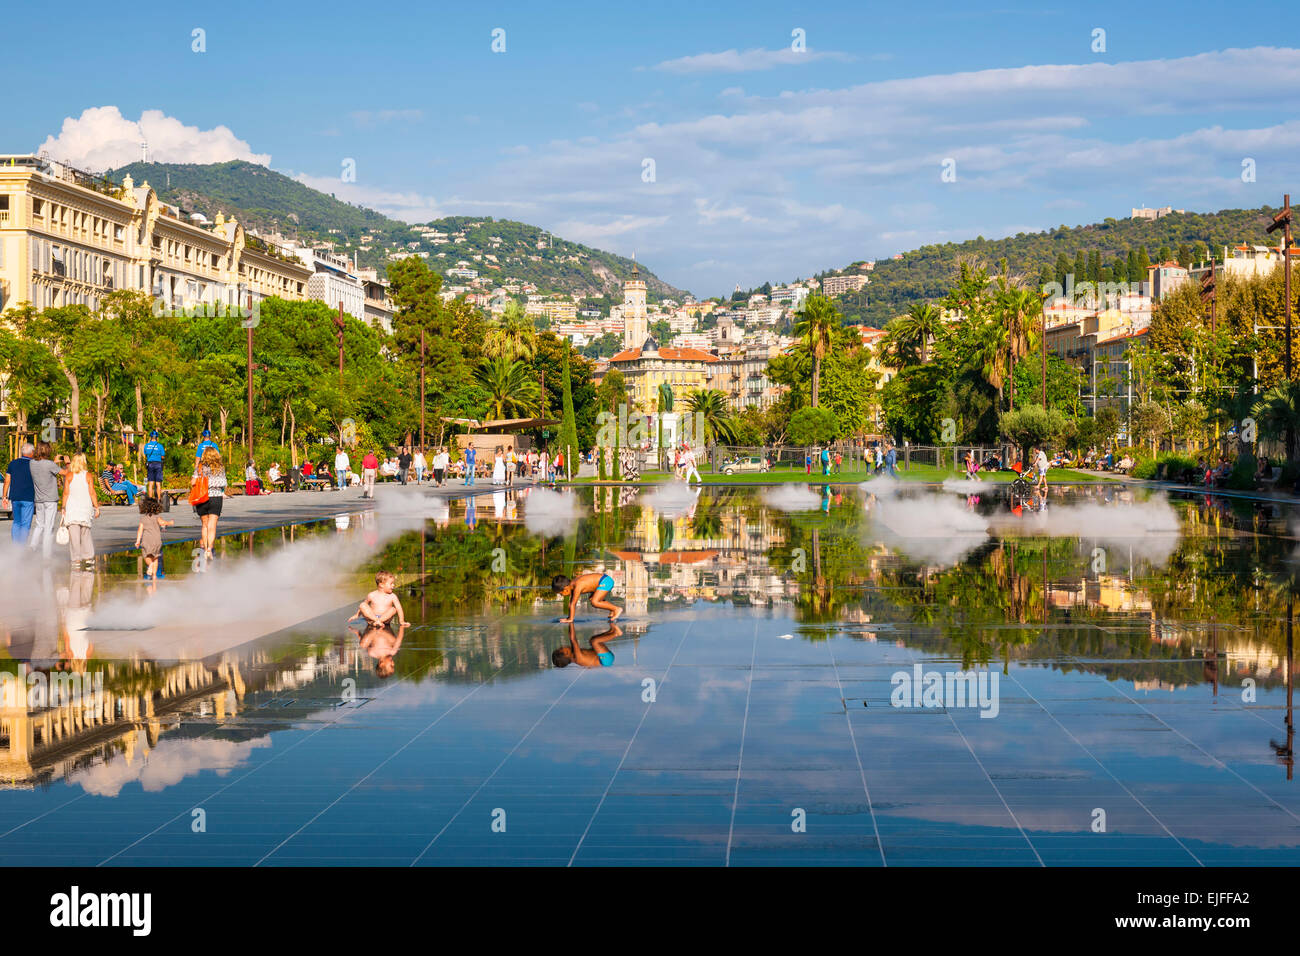 Nizza, Frankreich - 2. Oktober 2014: Kinder spielen im Brunnen auf der Promenade du Paillon reflektieren die Stadt und die umliegenden Hügel. Stockfoto